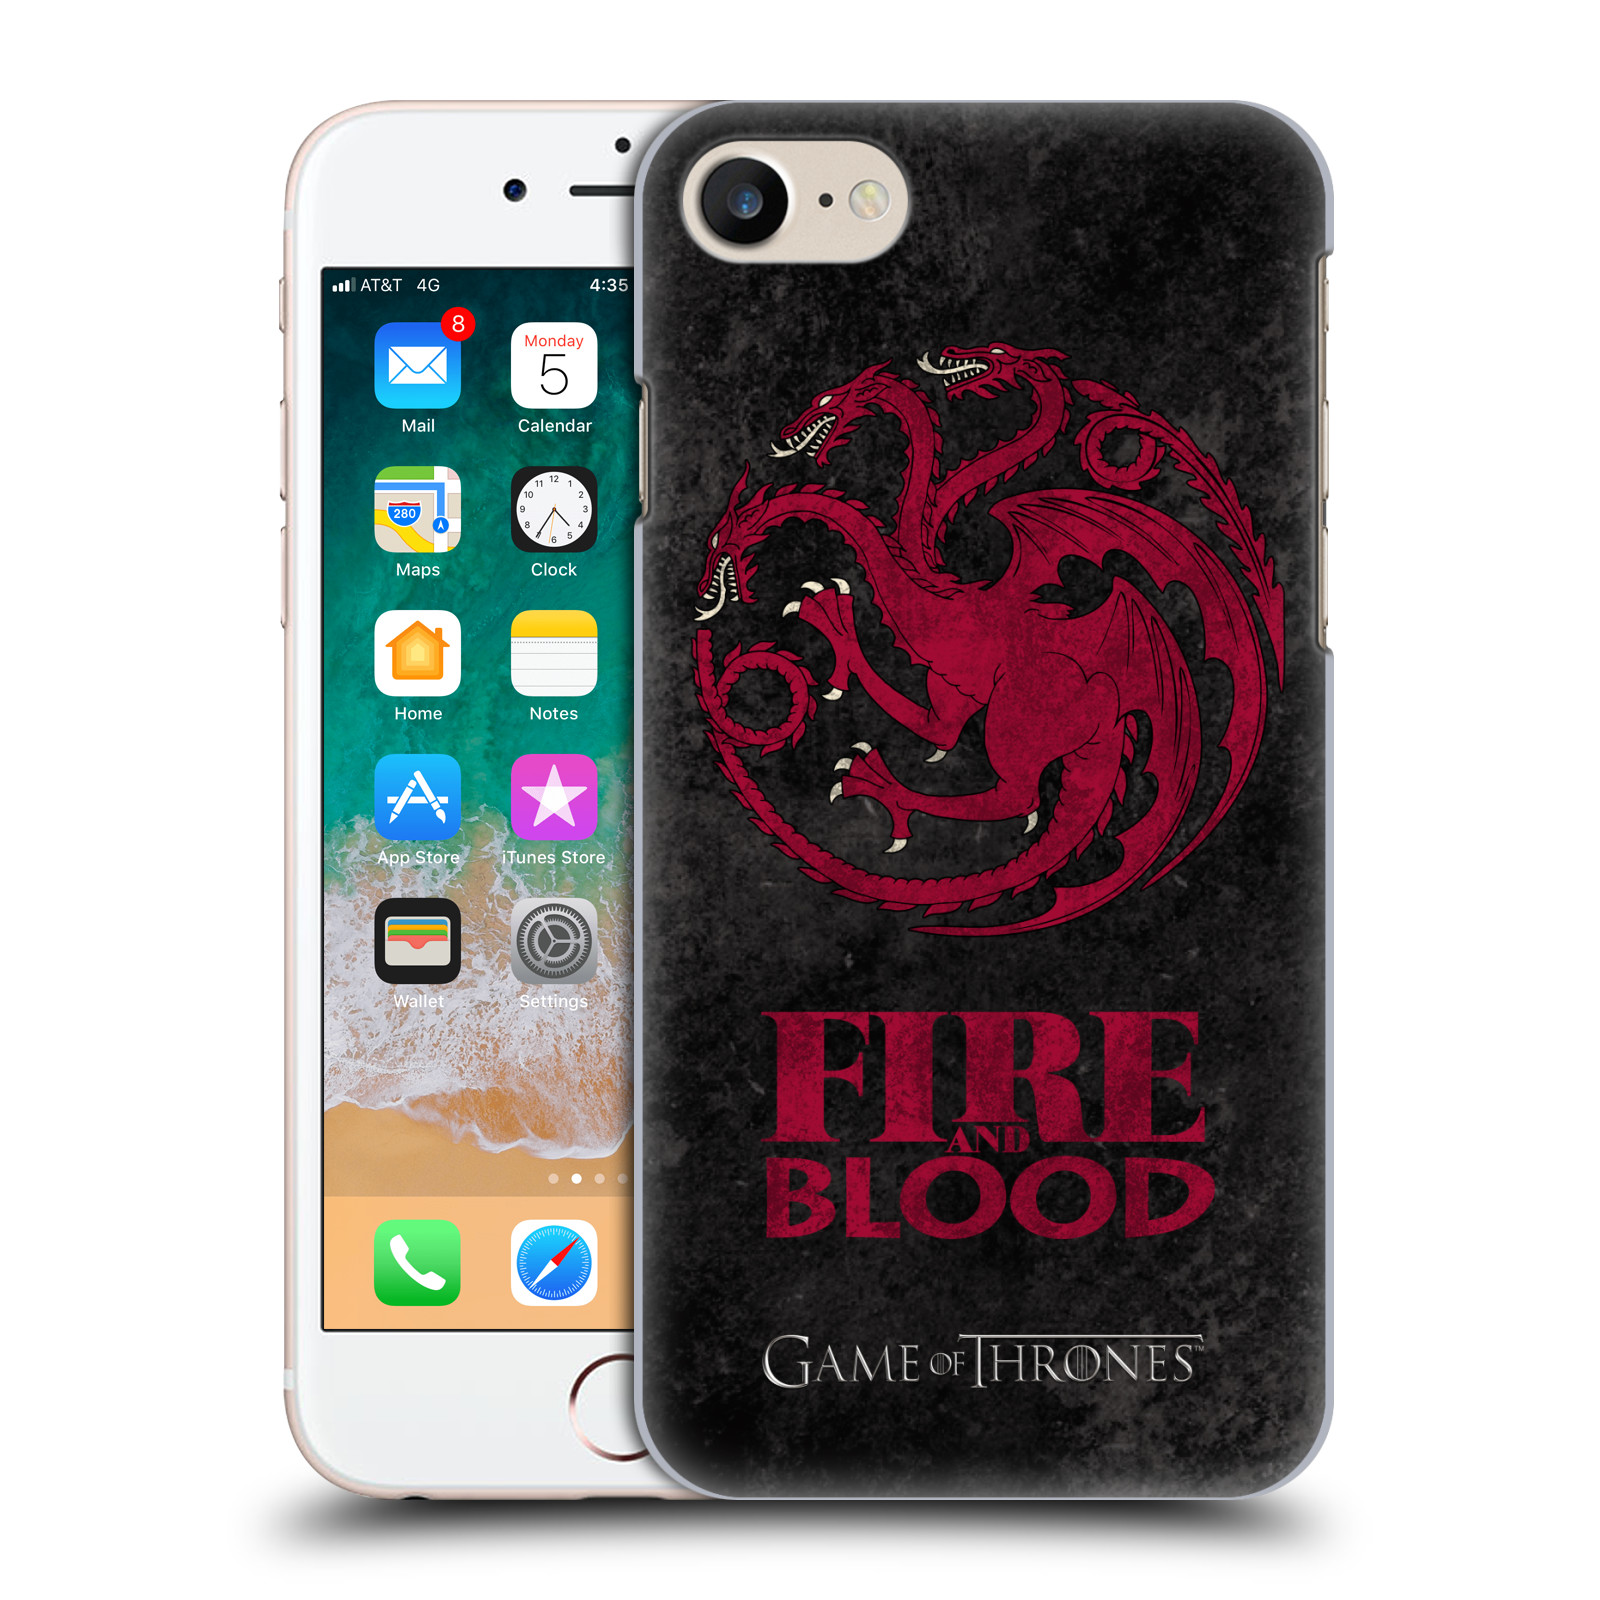 Plastové pouzdro na mobil Apple iPhone 7 HEAD CASE Hra o trůny - Sigils Targaryen - Fire and Blood (Plastový kryt či obal na mobilní telefon s licencovaným motivem Hra o trůny - Game Of Thrones pro Apple iPhone 7)